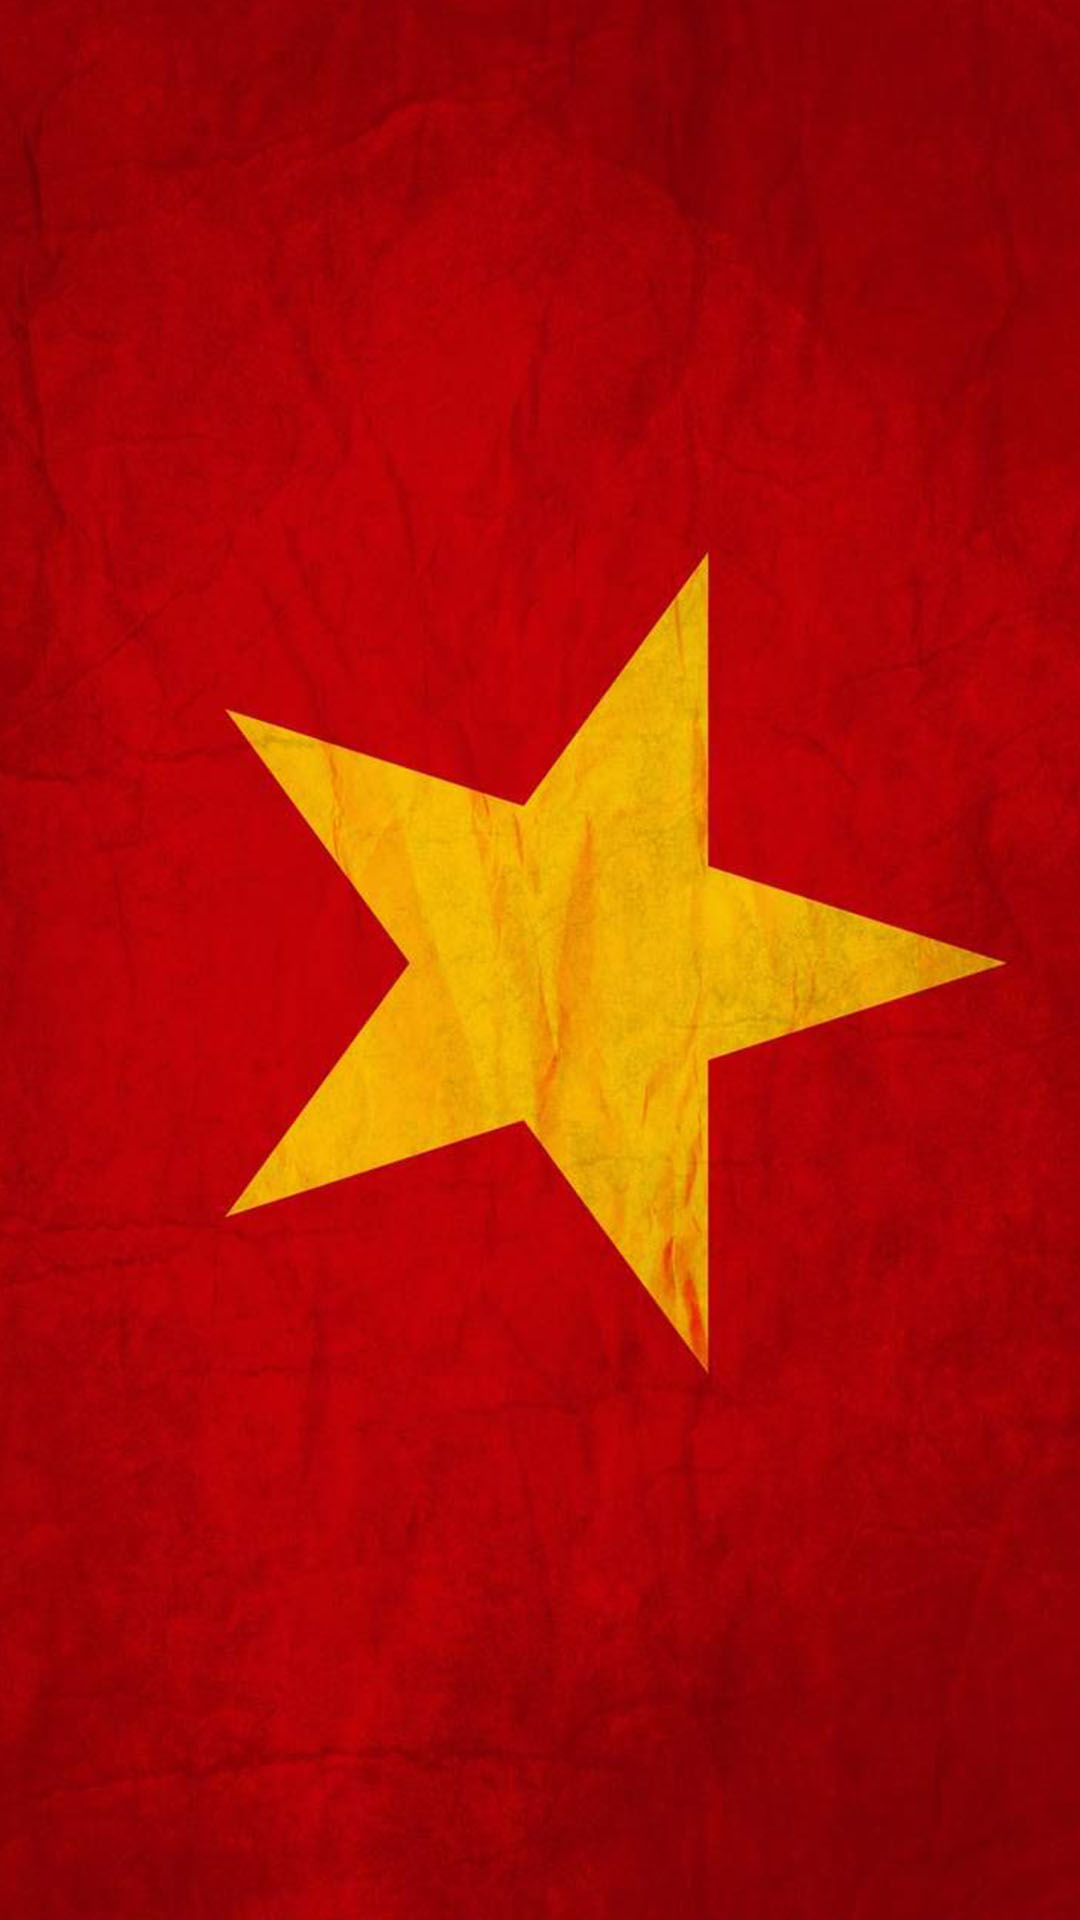 Hào hùng cờ đỏ sao vàng Việt Nam đại diện cho sự kiên cường, sức mạnh và niềm tự hào của dân tộc Việt Nam. Những chàng trai và cô gái đã hy sinh để bảo vệ nó, để giữ gìn vẻ đẹp của nó, để đem lại lợi ích cho đất nước và con người. Chúng ta cùng nhau vinh danh những người hùng của cờ đỏ sao vàng Việt Nam.